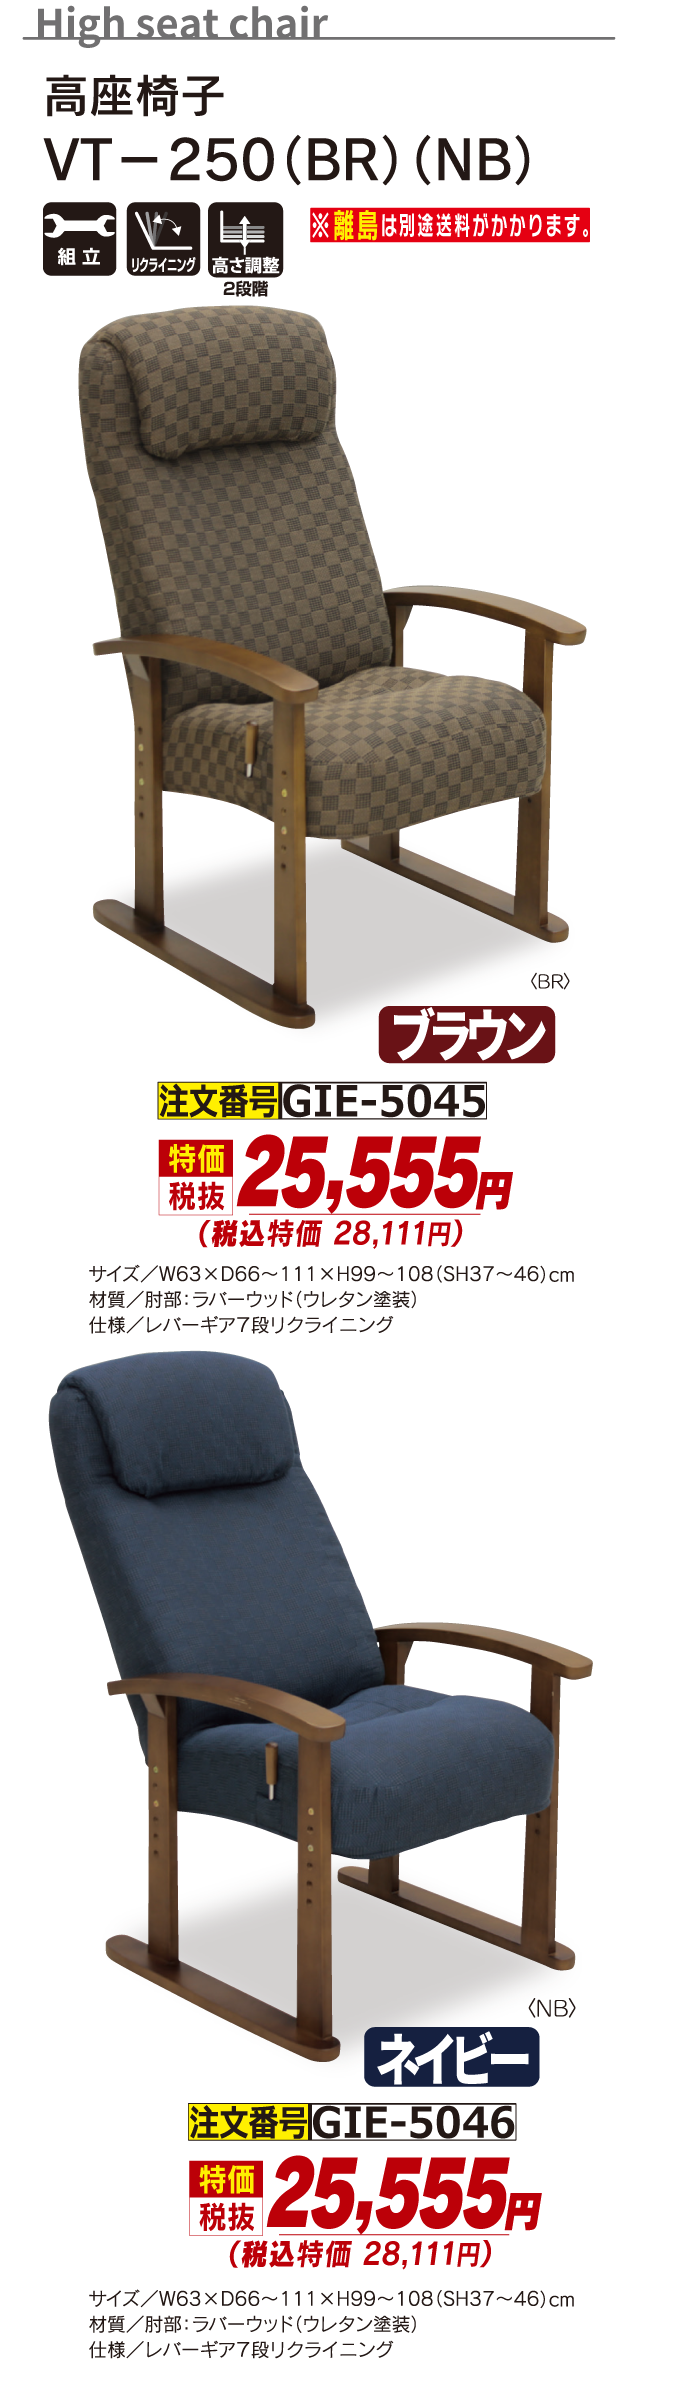 5045_高座椅子_VT-250